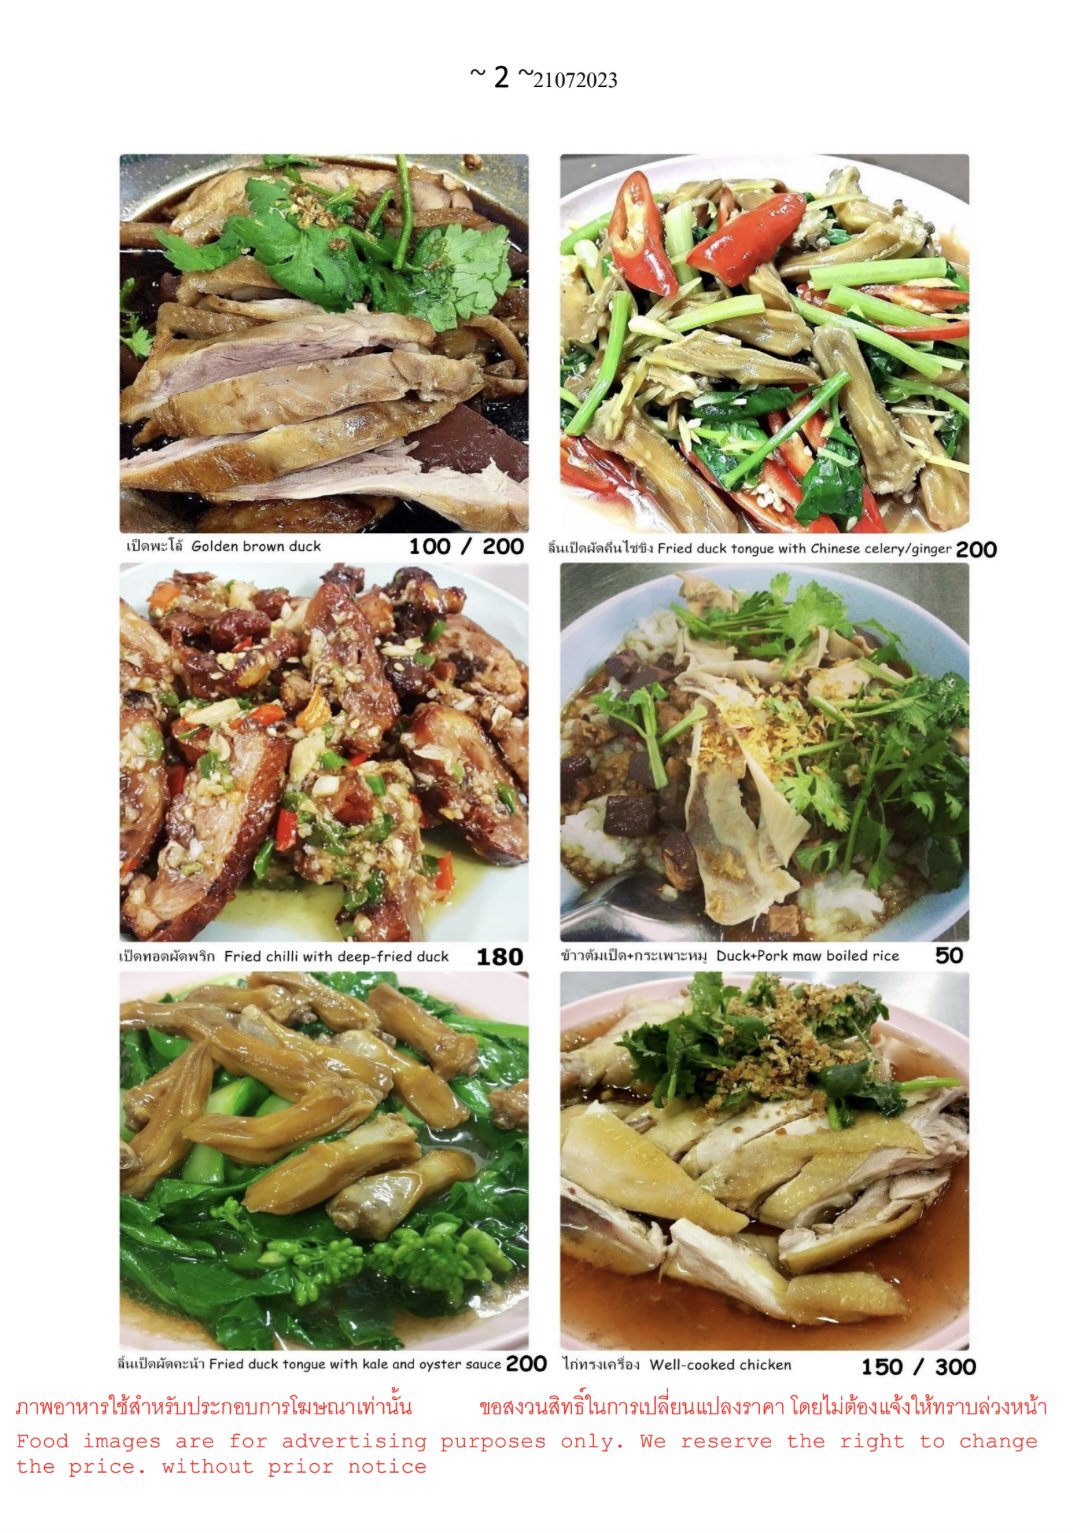 米其林必比登連續4年推薦
曼谷必吃Jeh O Chula菜單
媽媽麵